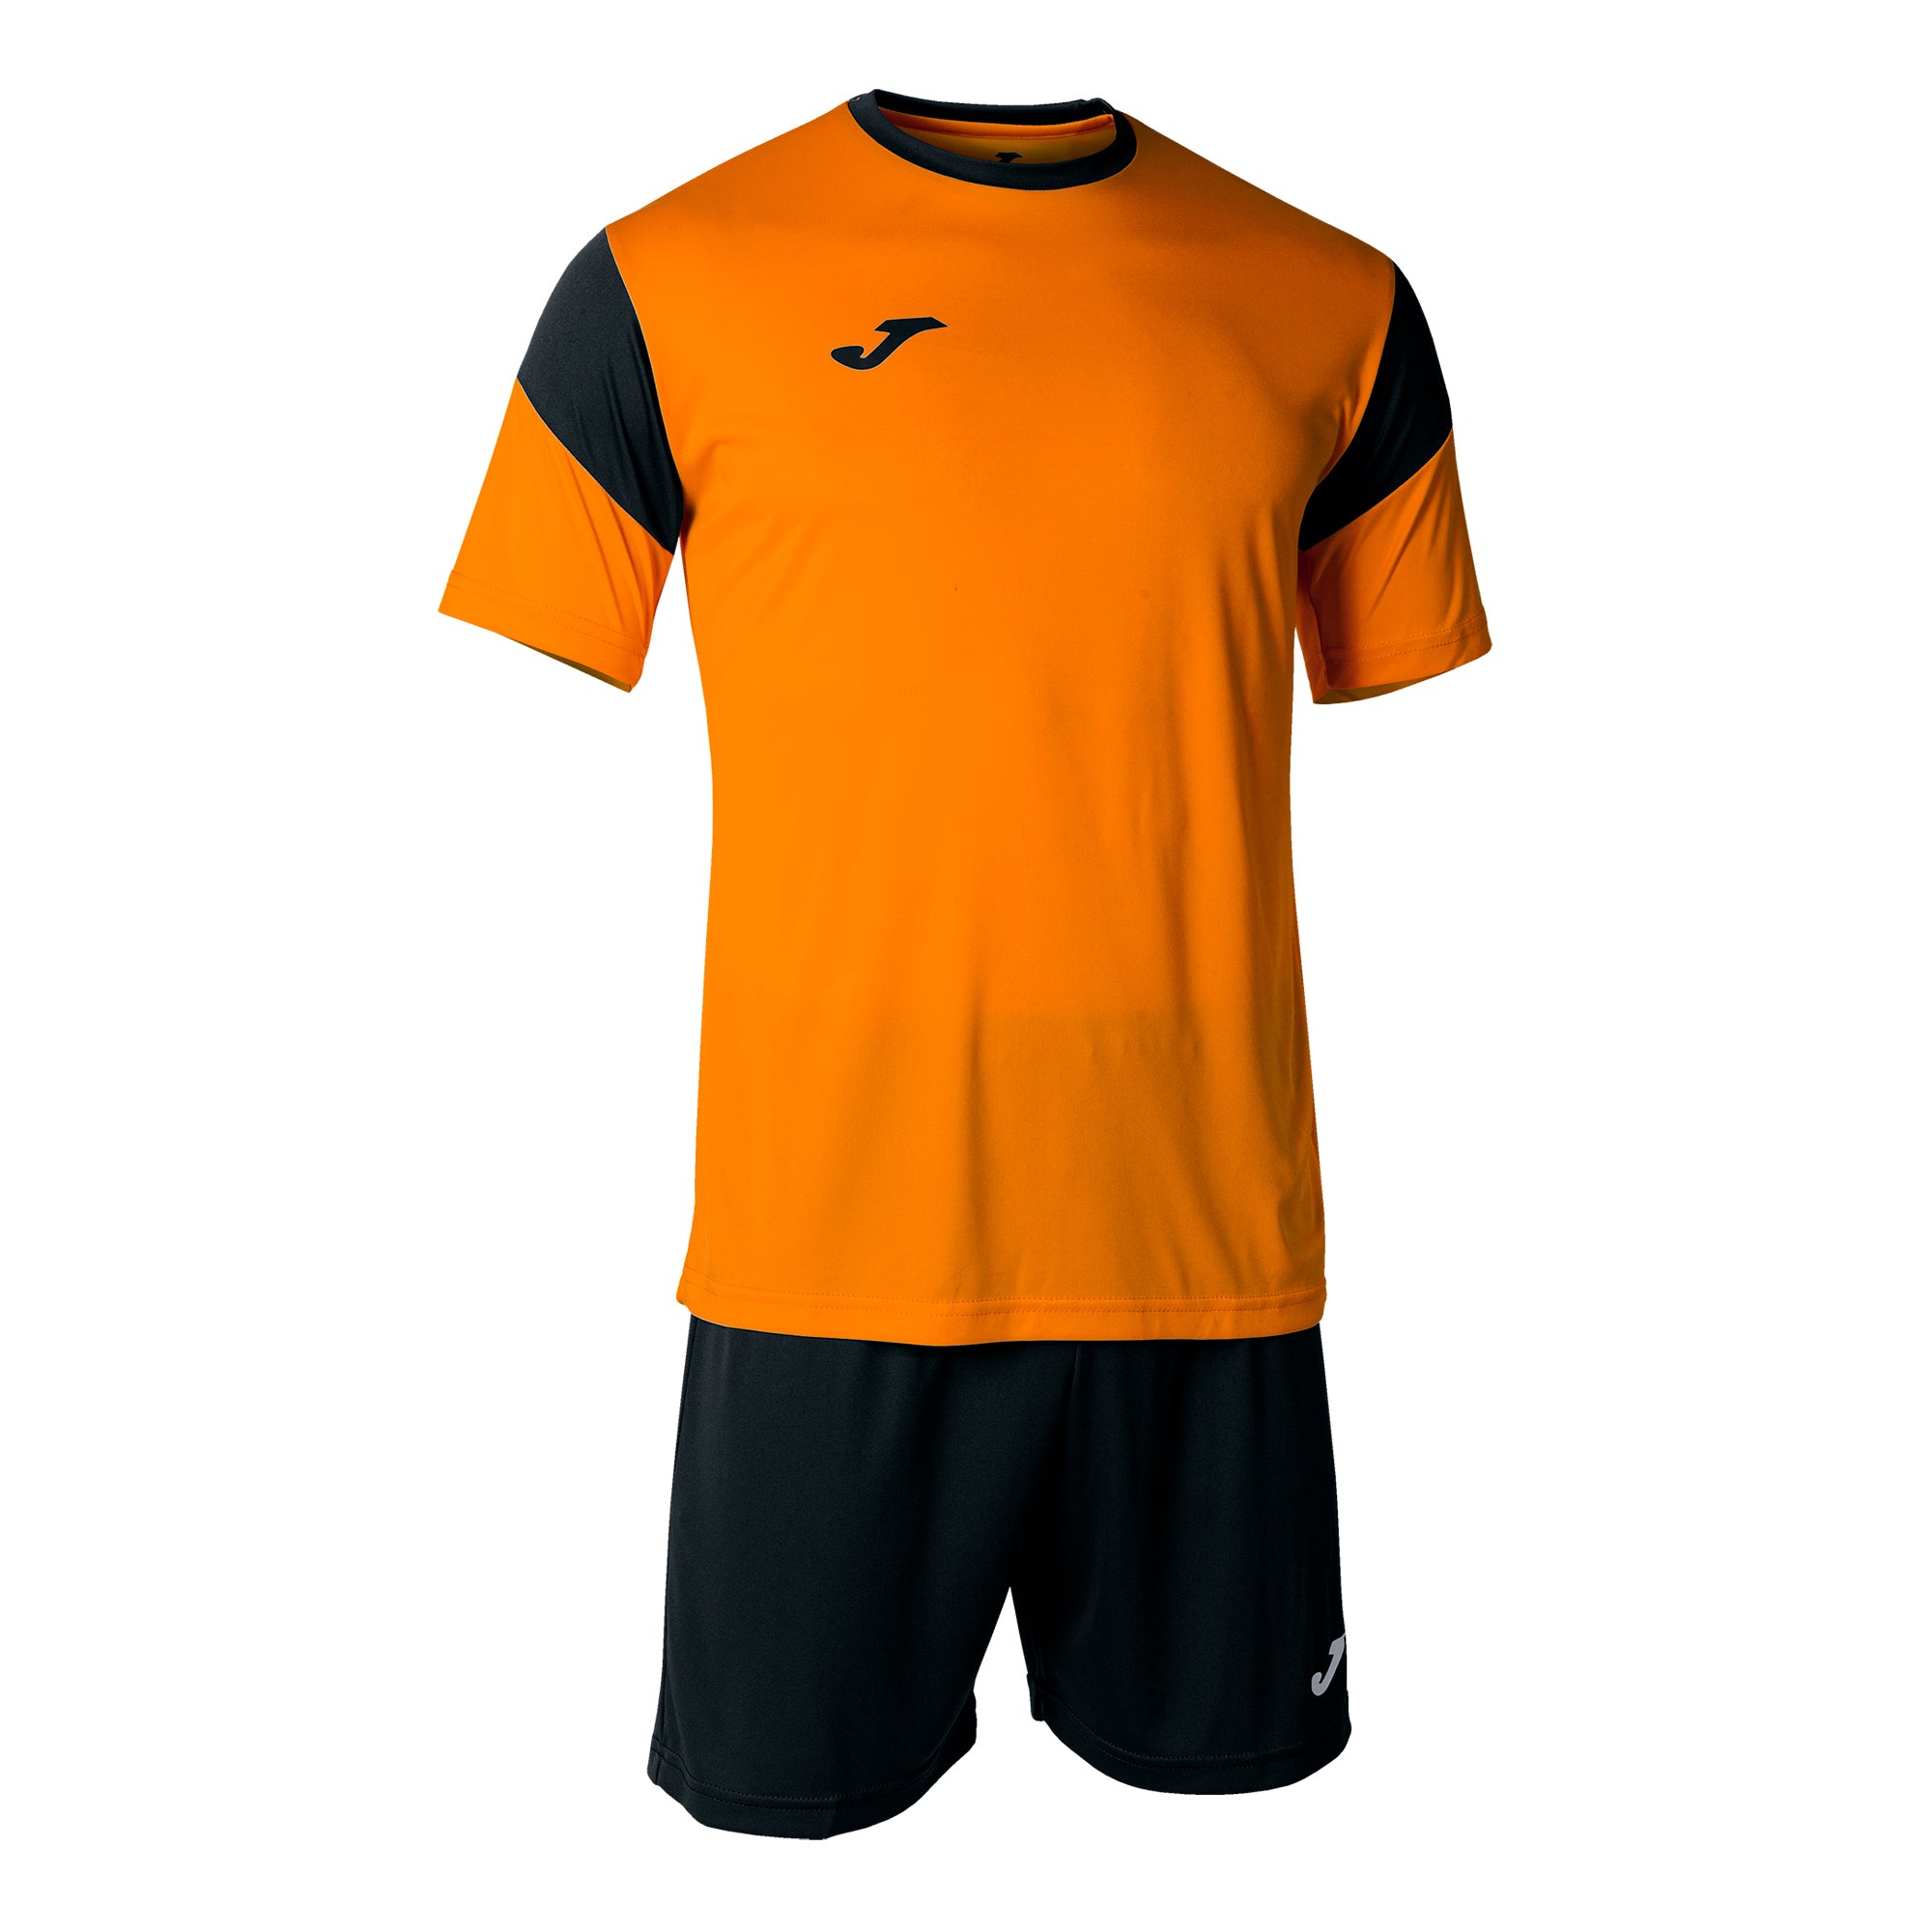 Joma Phoenix Kit Set - Orange/Black